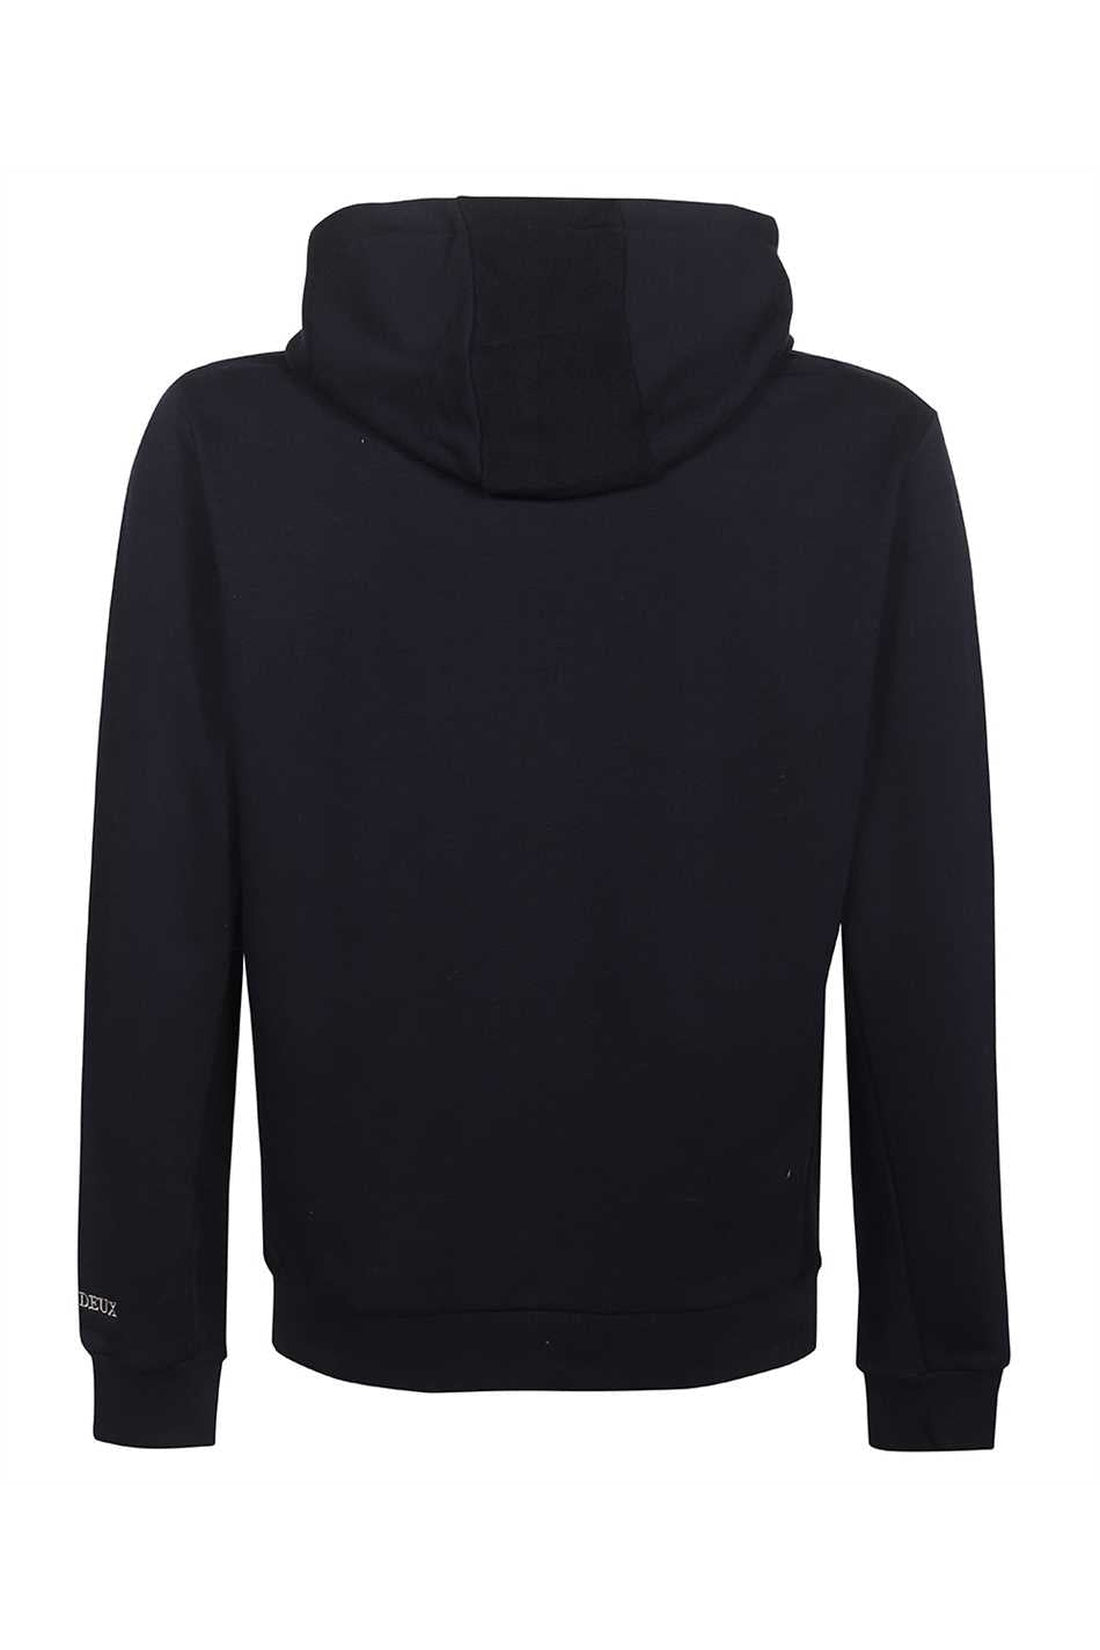 Les Deux-OUTLET-SALE-Hooded sweatshirt-ARCHIVIST